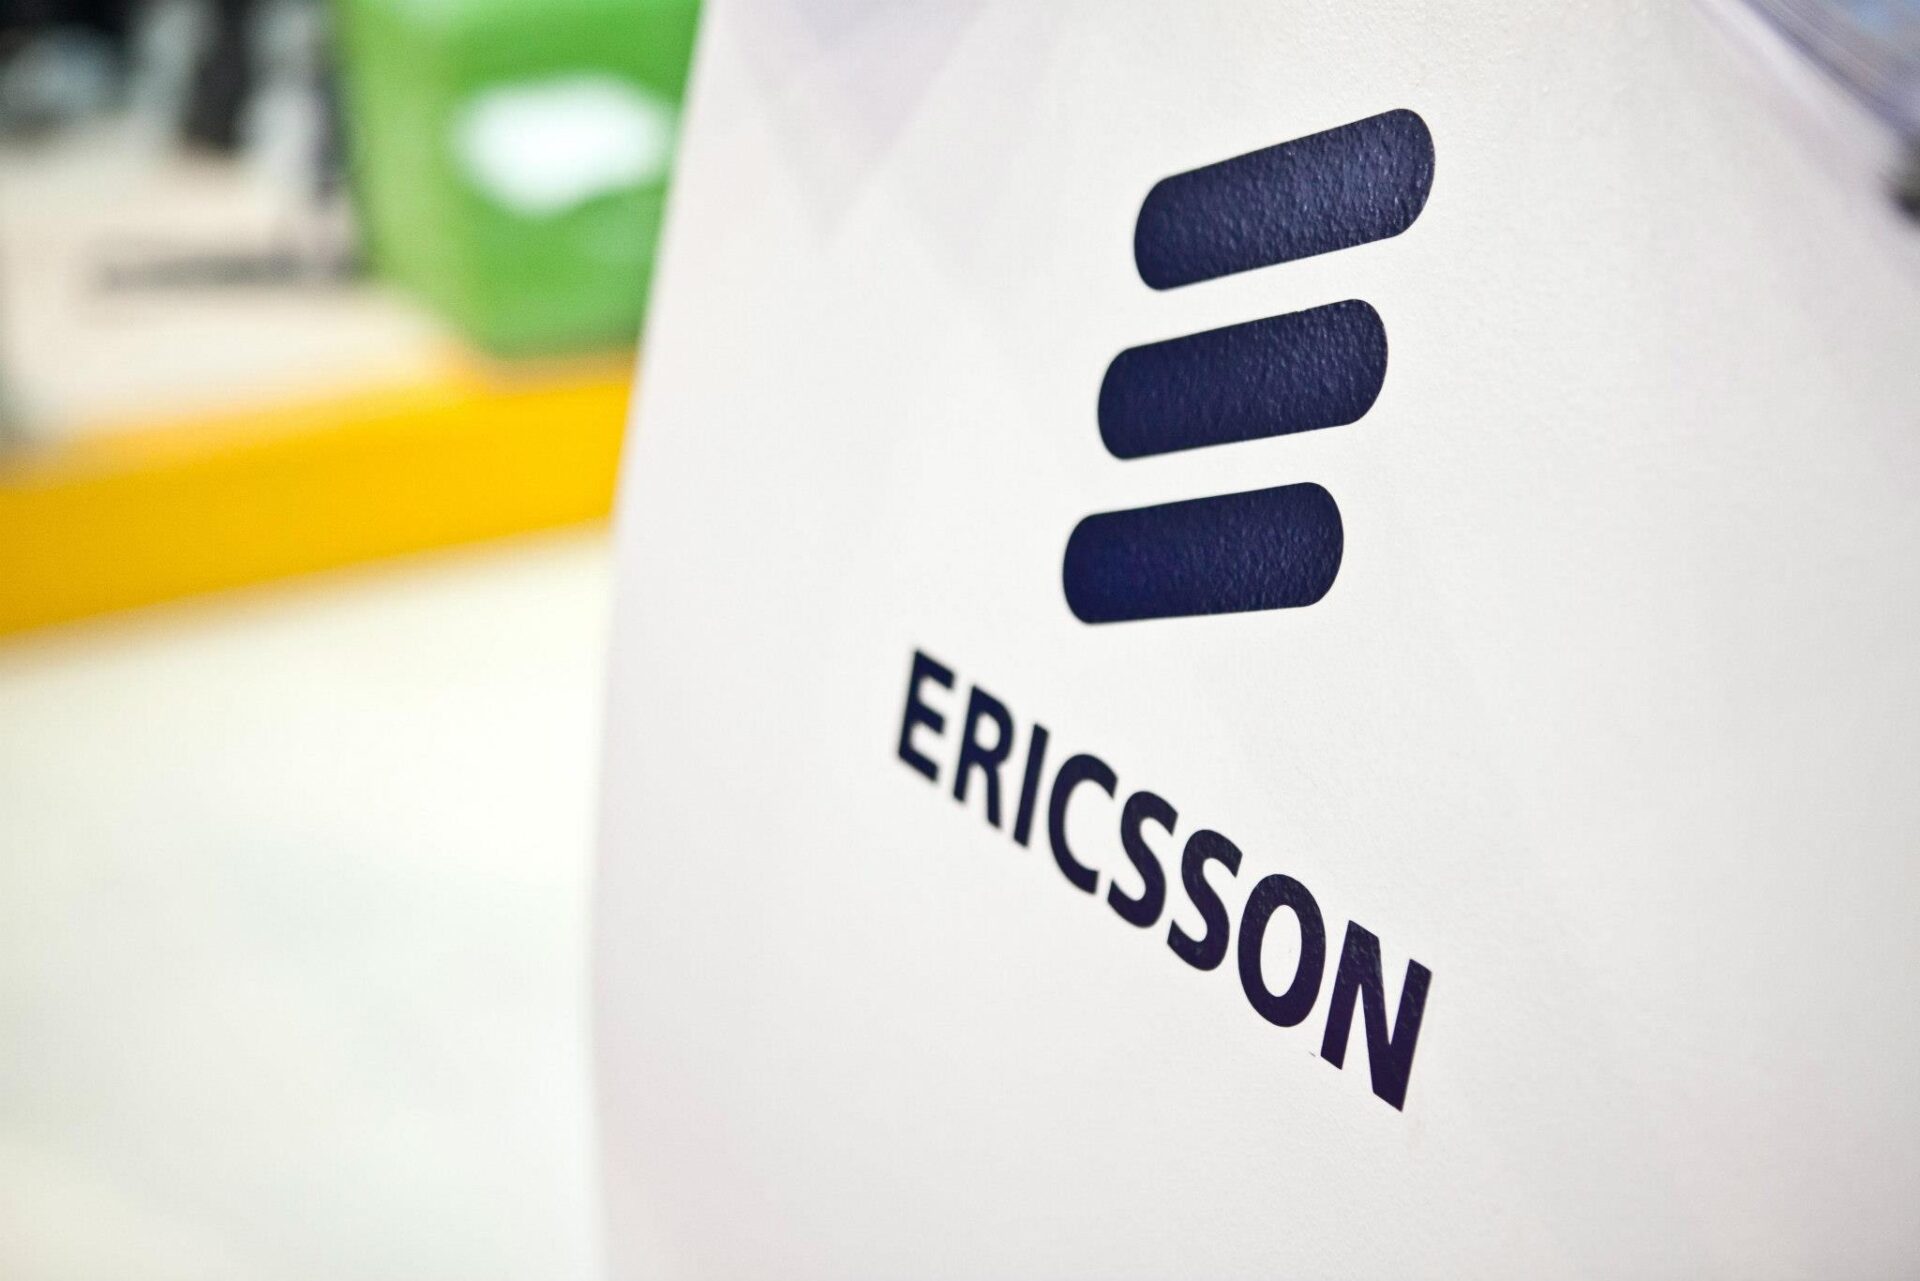 Más despidos: Ericsson recortará 8,500 empleos